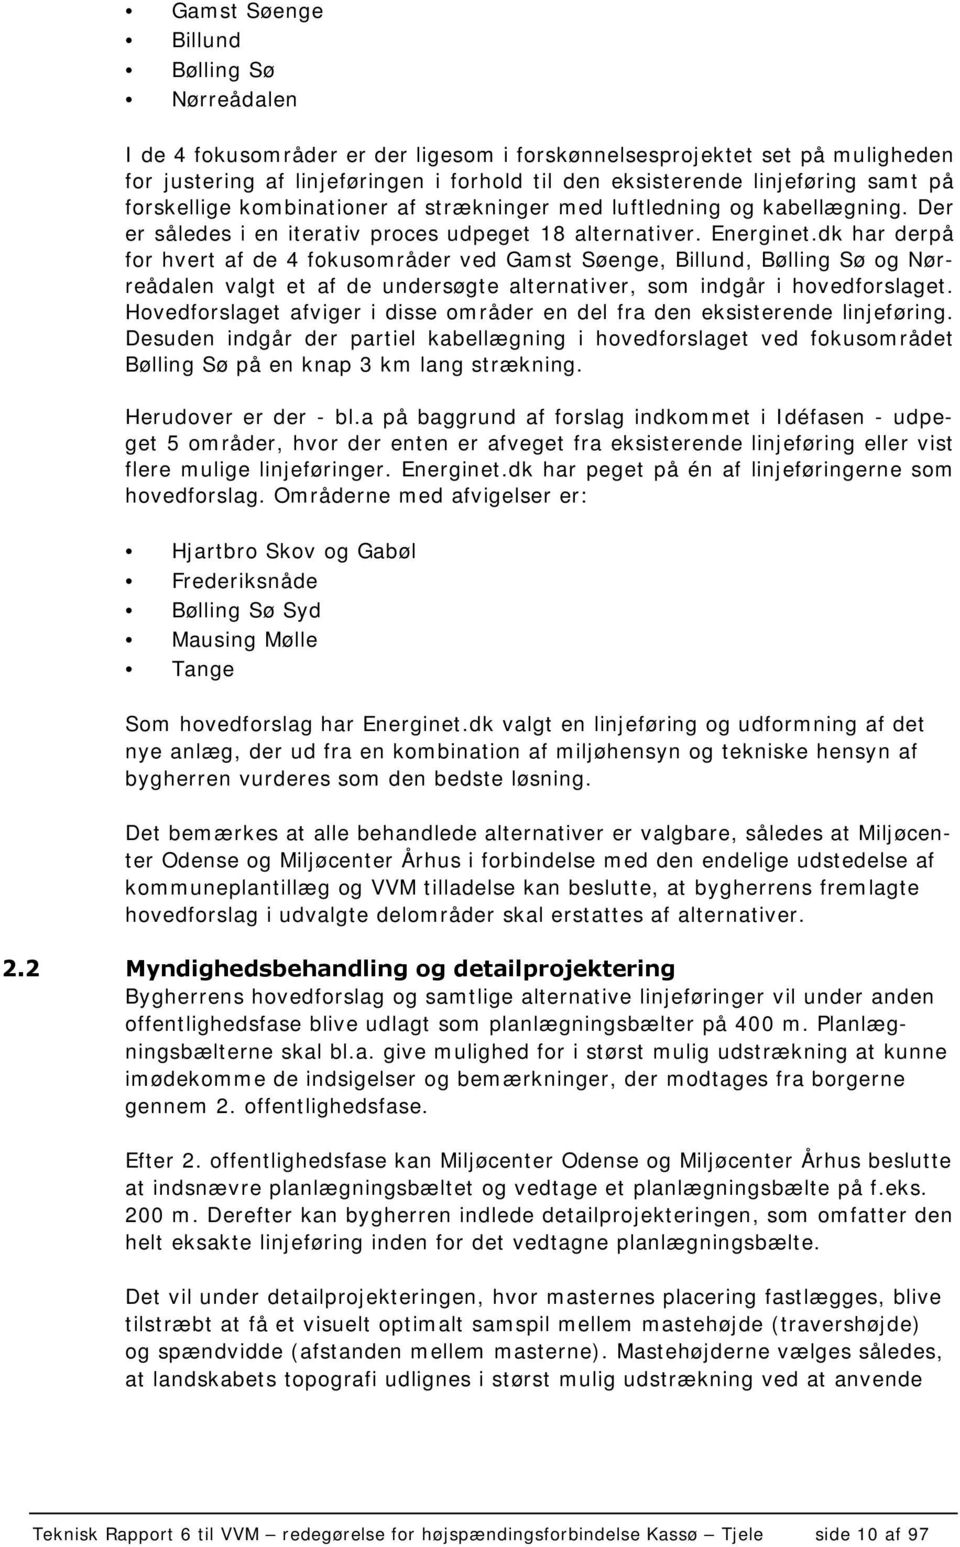 dk har derpå for hvert af de 4 fokusområder ved Gamst Søenge, Billund, Bølling Sø og Nørreådalen valgt et af de undersøgte alternativer, som indgår i hovedforslaget.